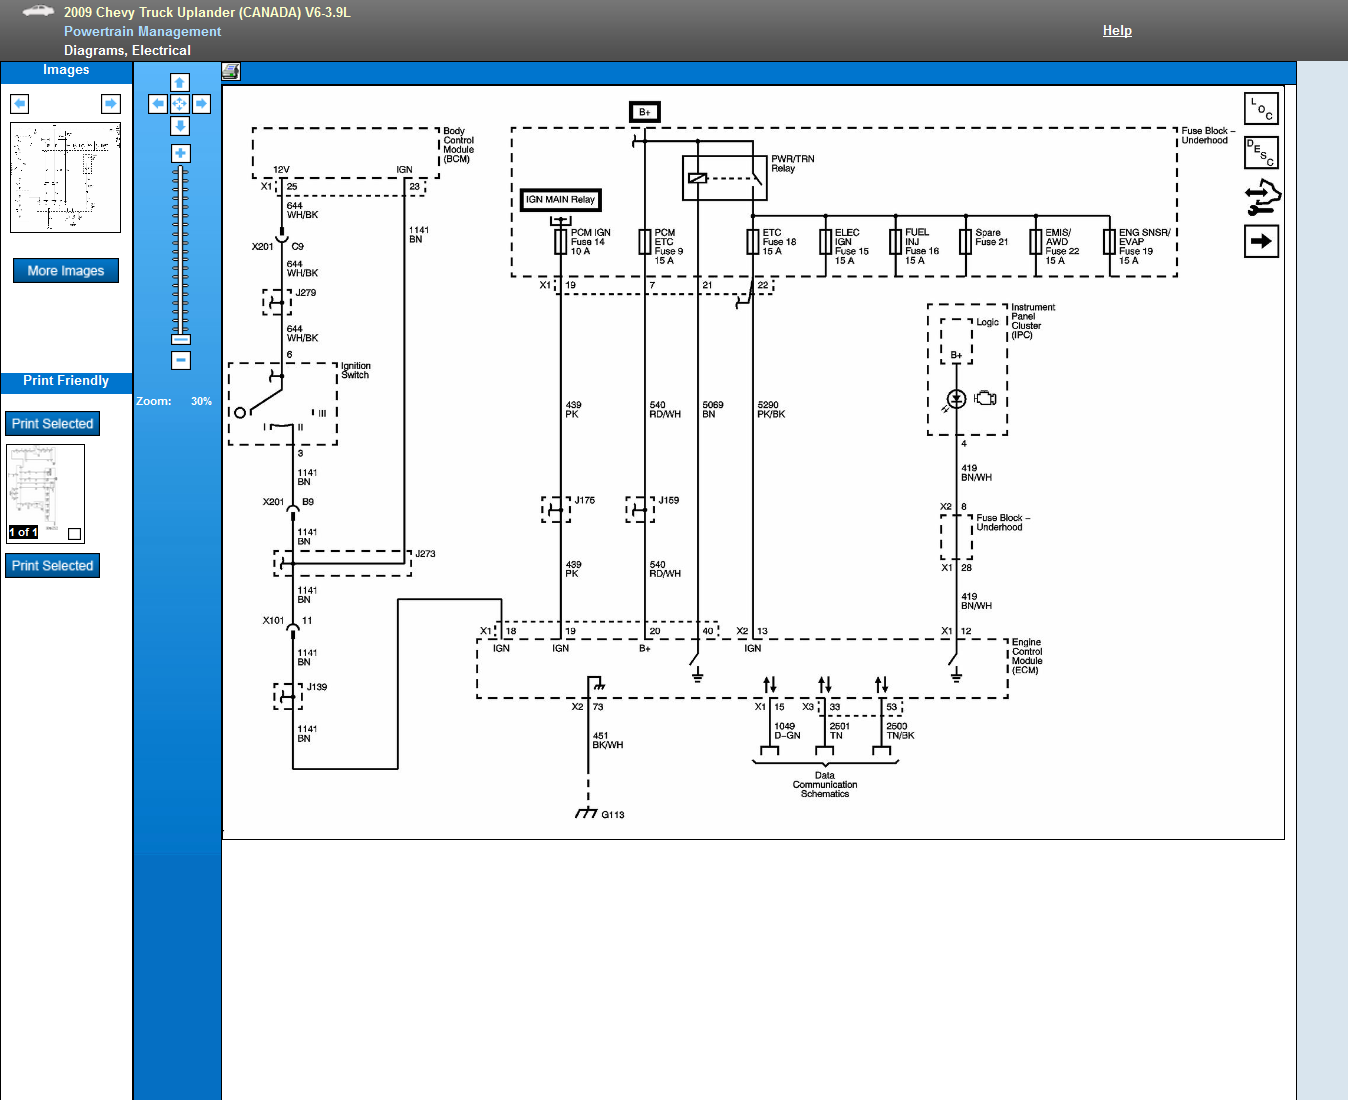 2007 Chevy Uplander Wiring Diagram Wiring Diagram And Schematic